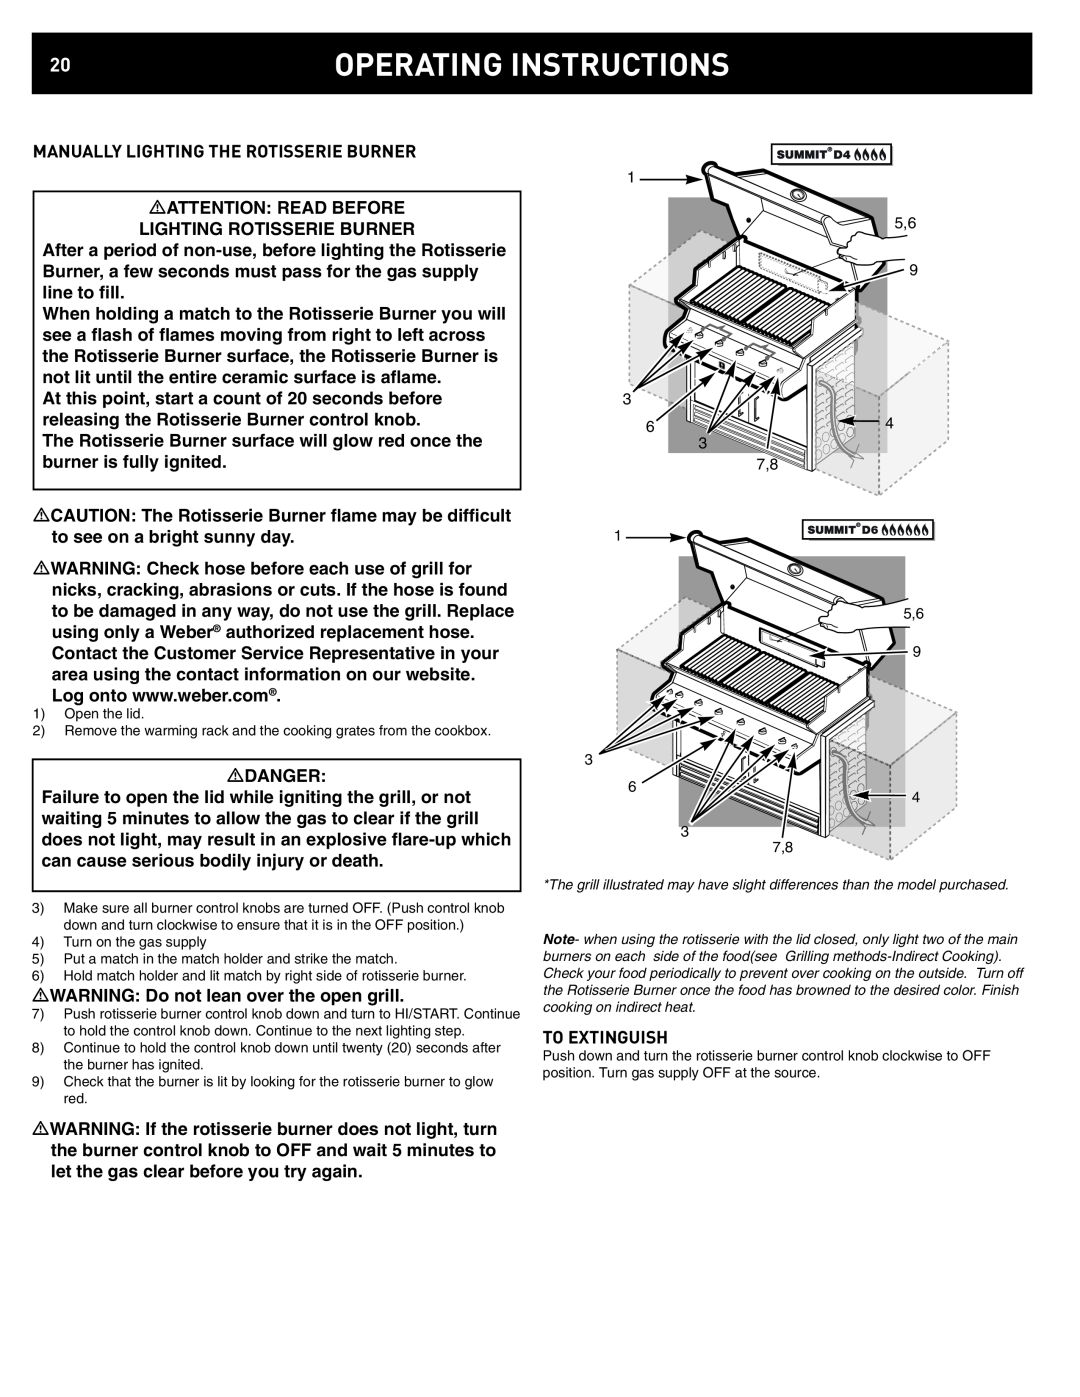 Weber D6, D4 manual Operating Instructions 